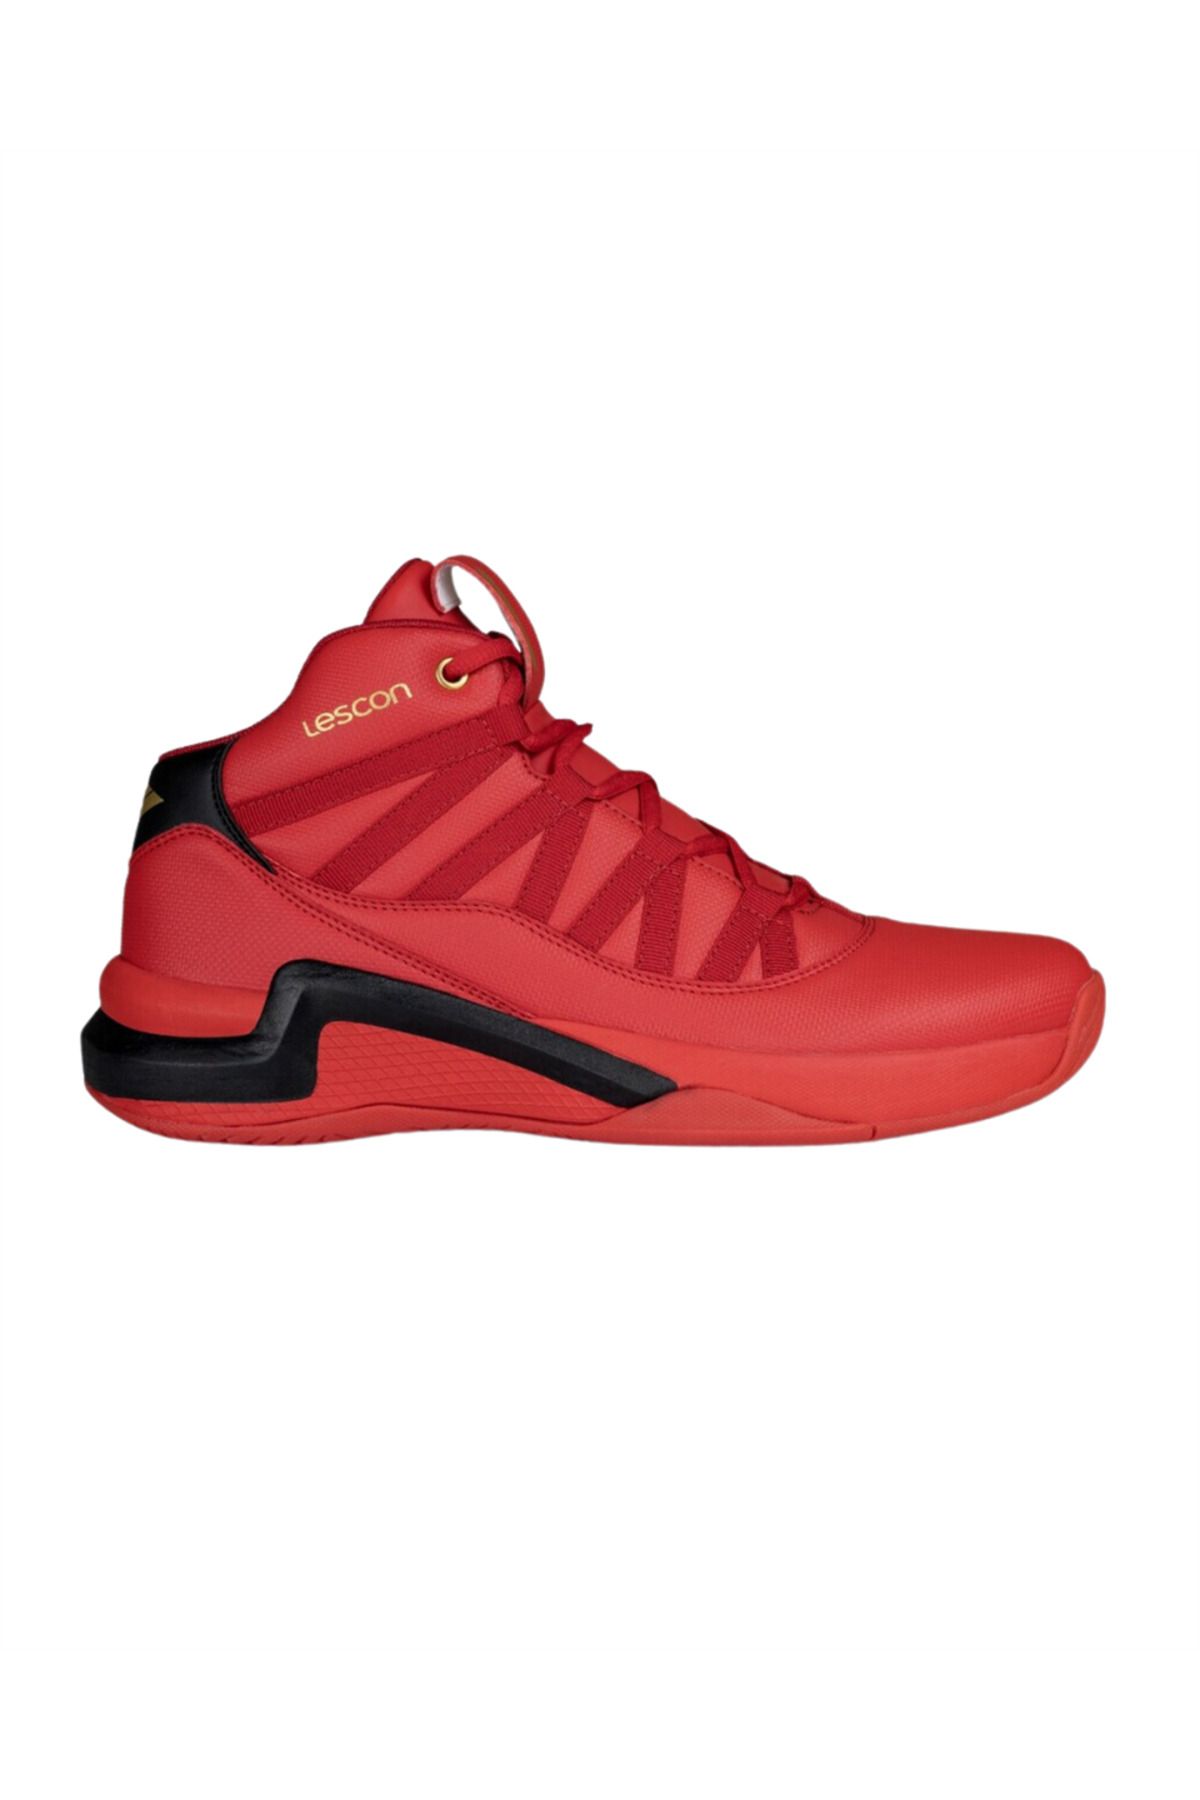 Lescon Bounce-4 Erkek Kırmızı Basketbol Ayakkabı